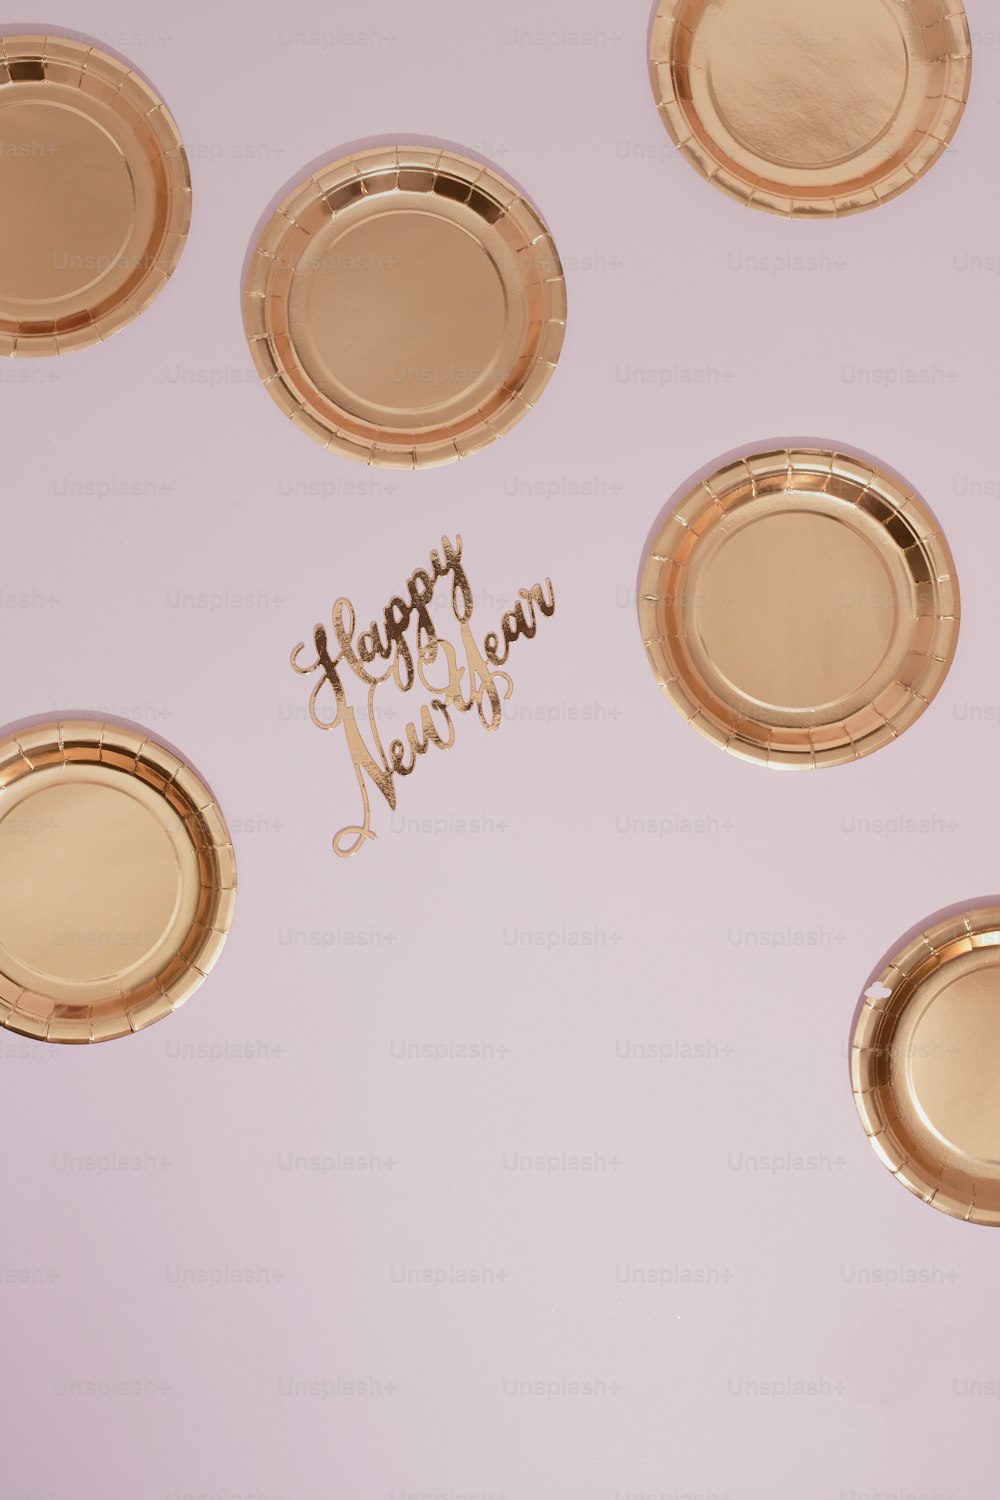 Felice Anno Nuovo scritto su un tavolo con piatti d'oro